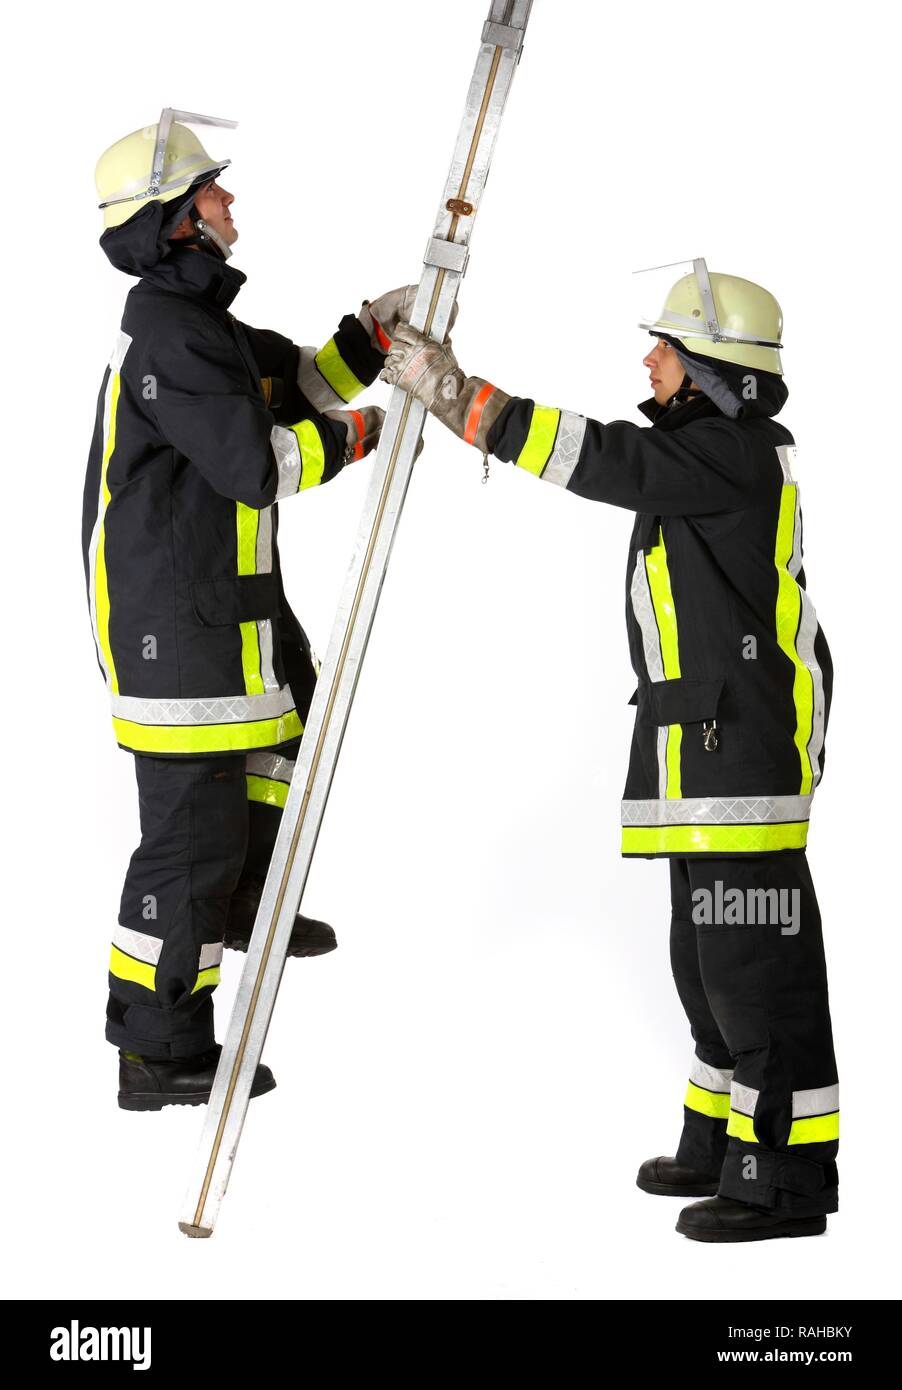 Pompiers volontaires par une échelle en aluminium, les pompiers professionnels de la Berufsfeuerwehr Essen, Essen, Rhénanie du Nord-Westphalie Banque D'Images